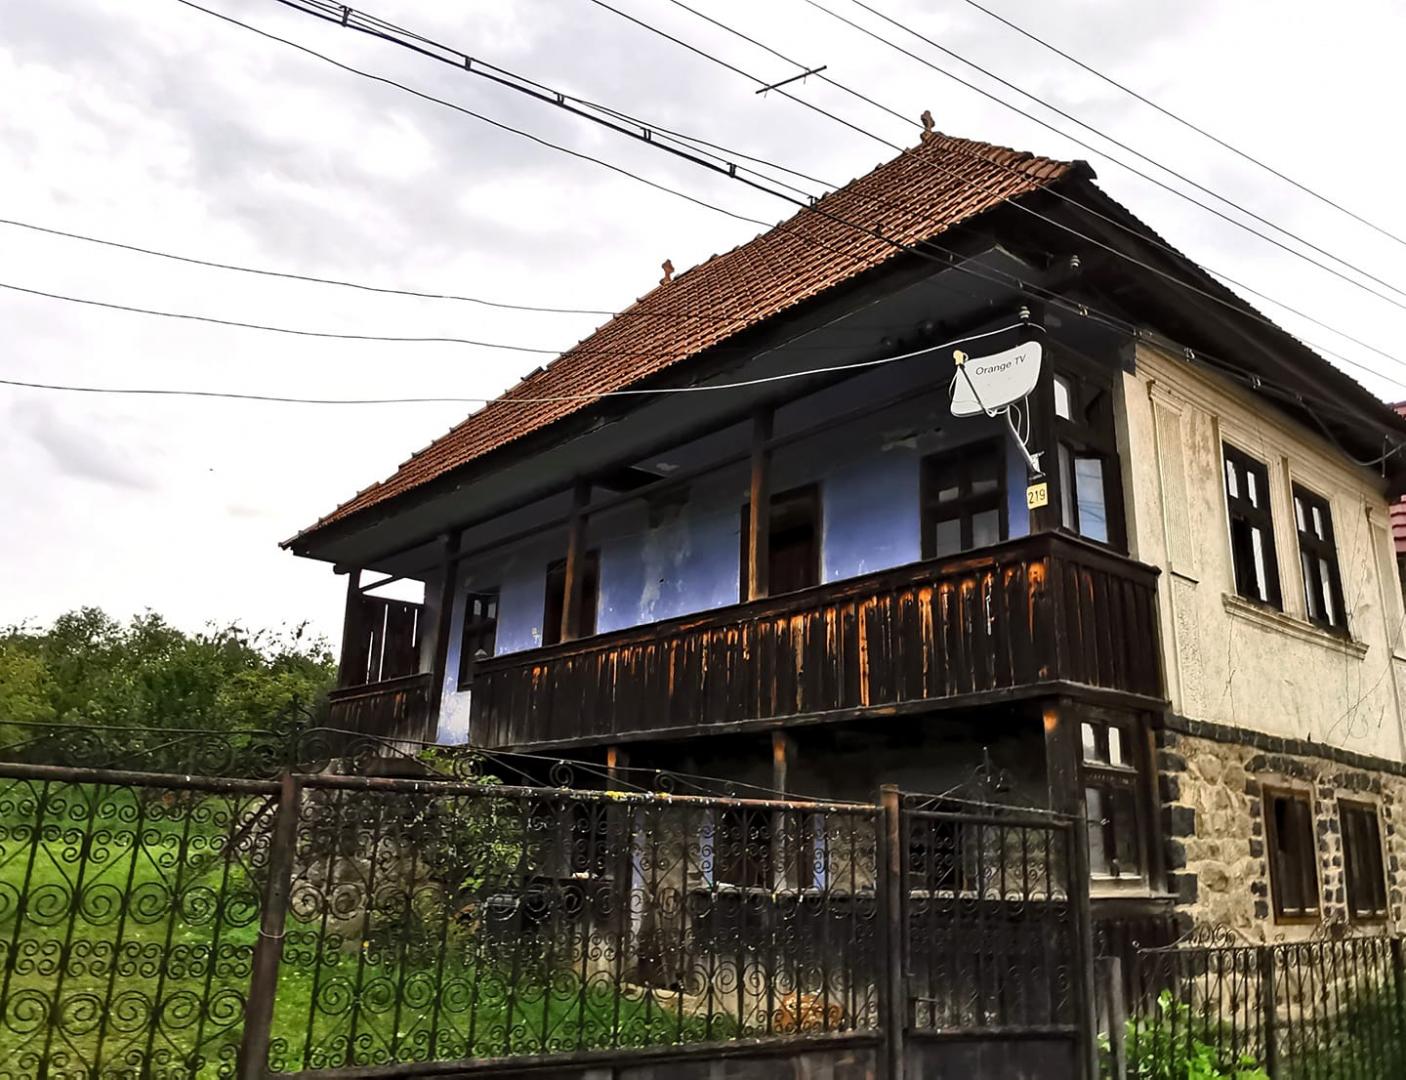 Arhitectul șef al Clujului, a admirat o casă de la țară: "Este un exemplu mai atipic"